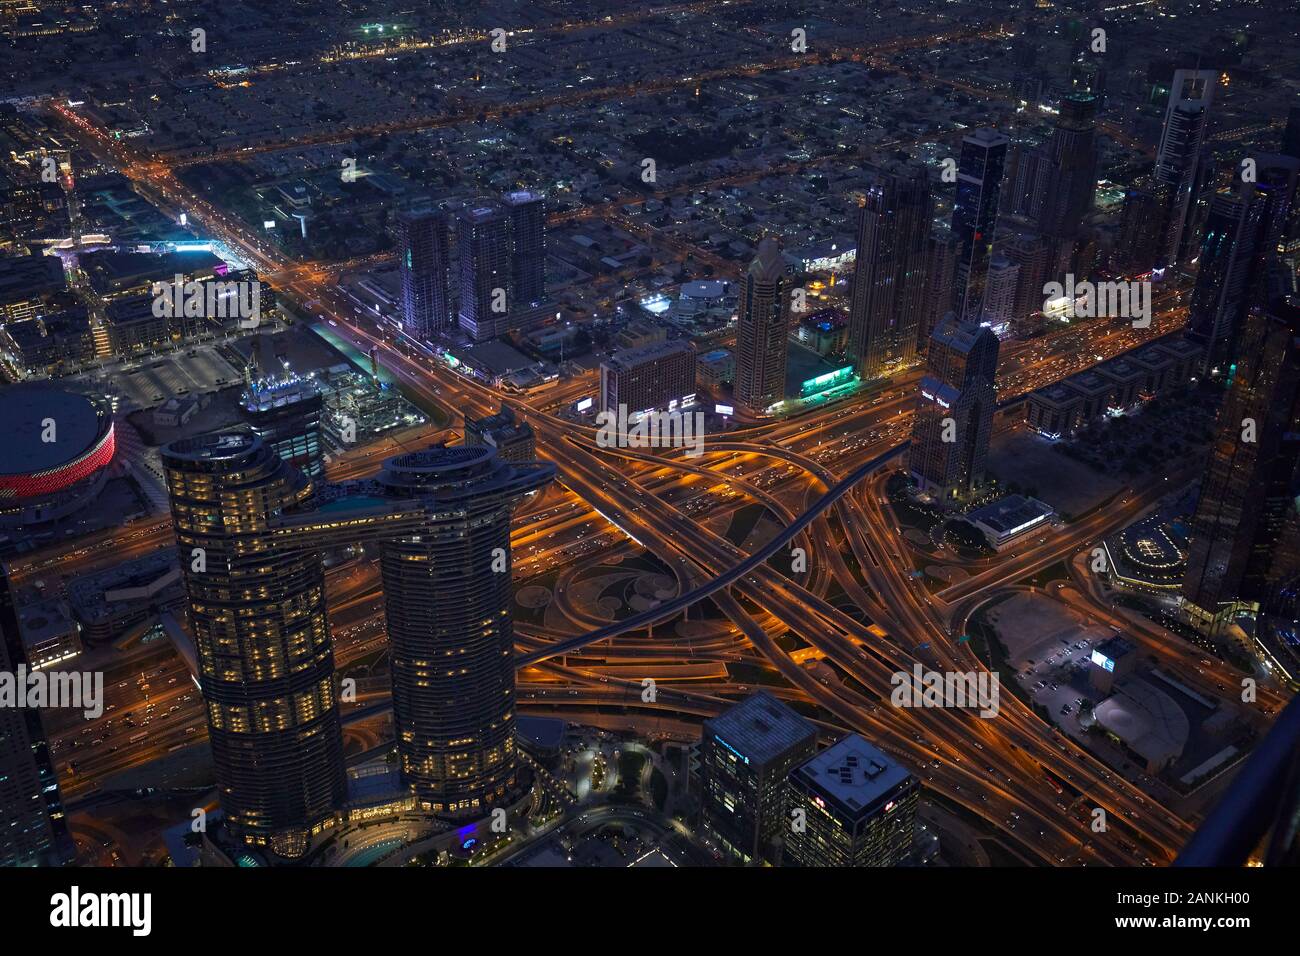 DUBAI, Emirati Arabi Uniti - 19 novembre 2019: Dubai città illuminata ad alto angolo di visione con grattacieli e intricated strade di notte Foto Stock